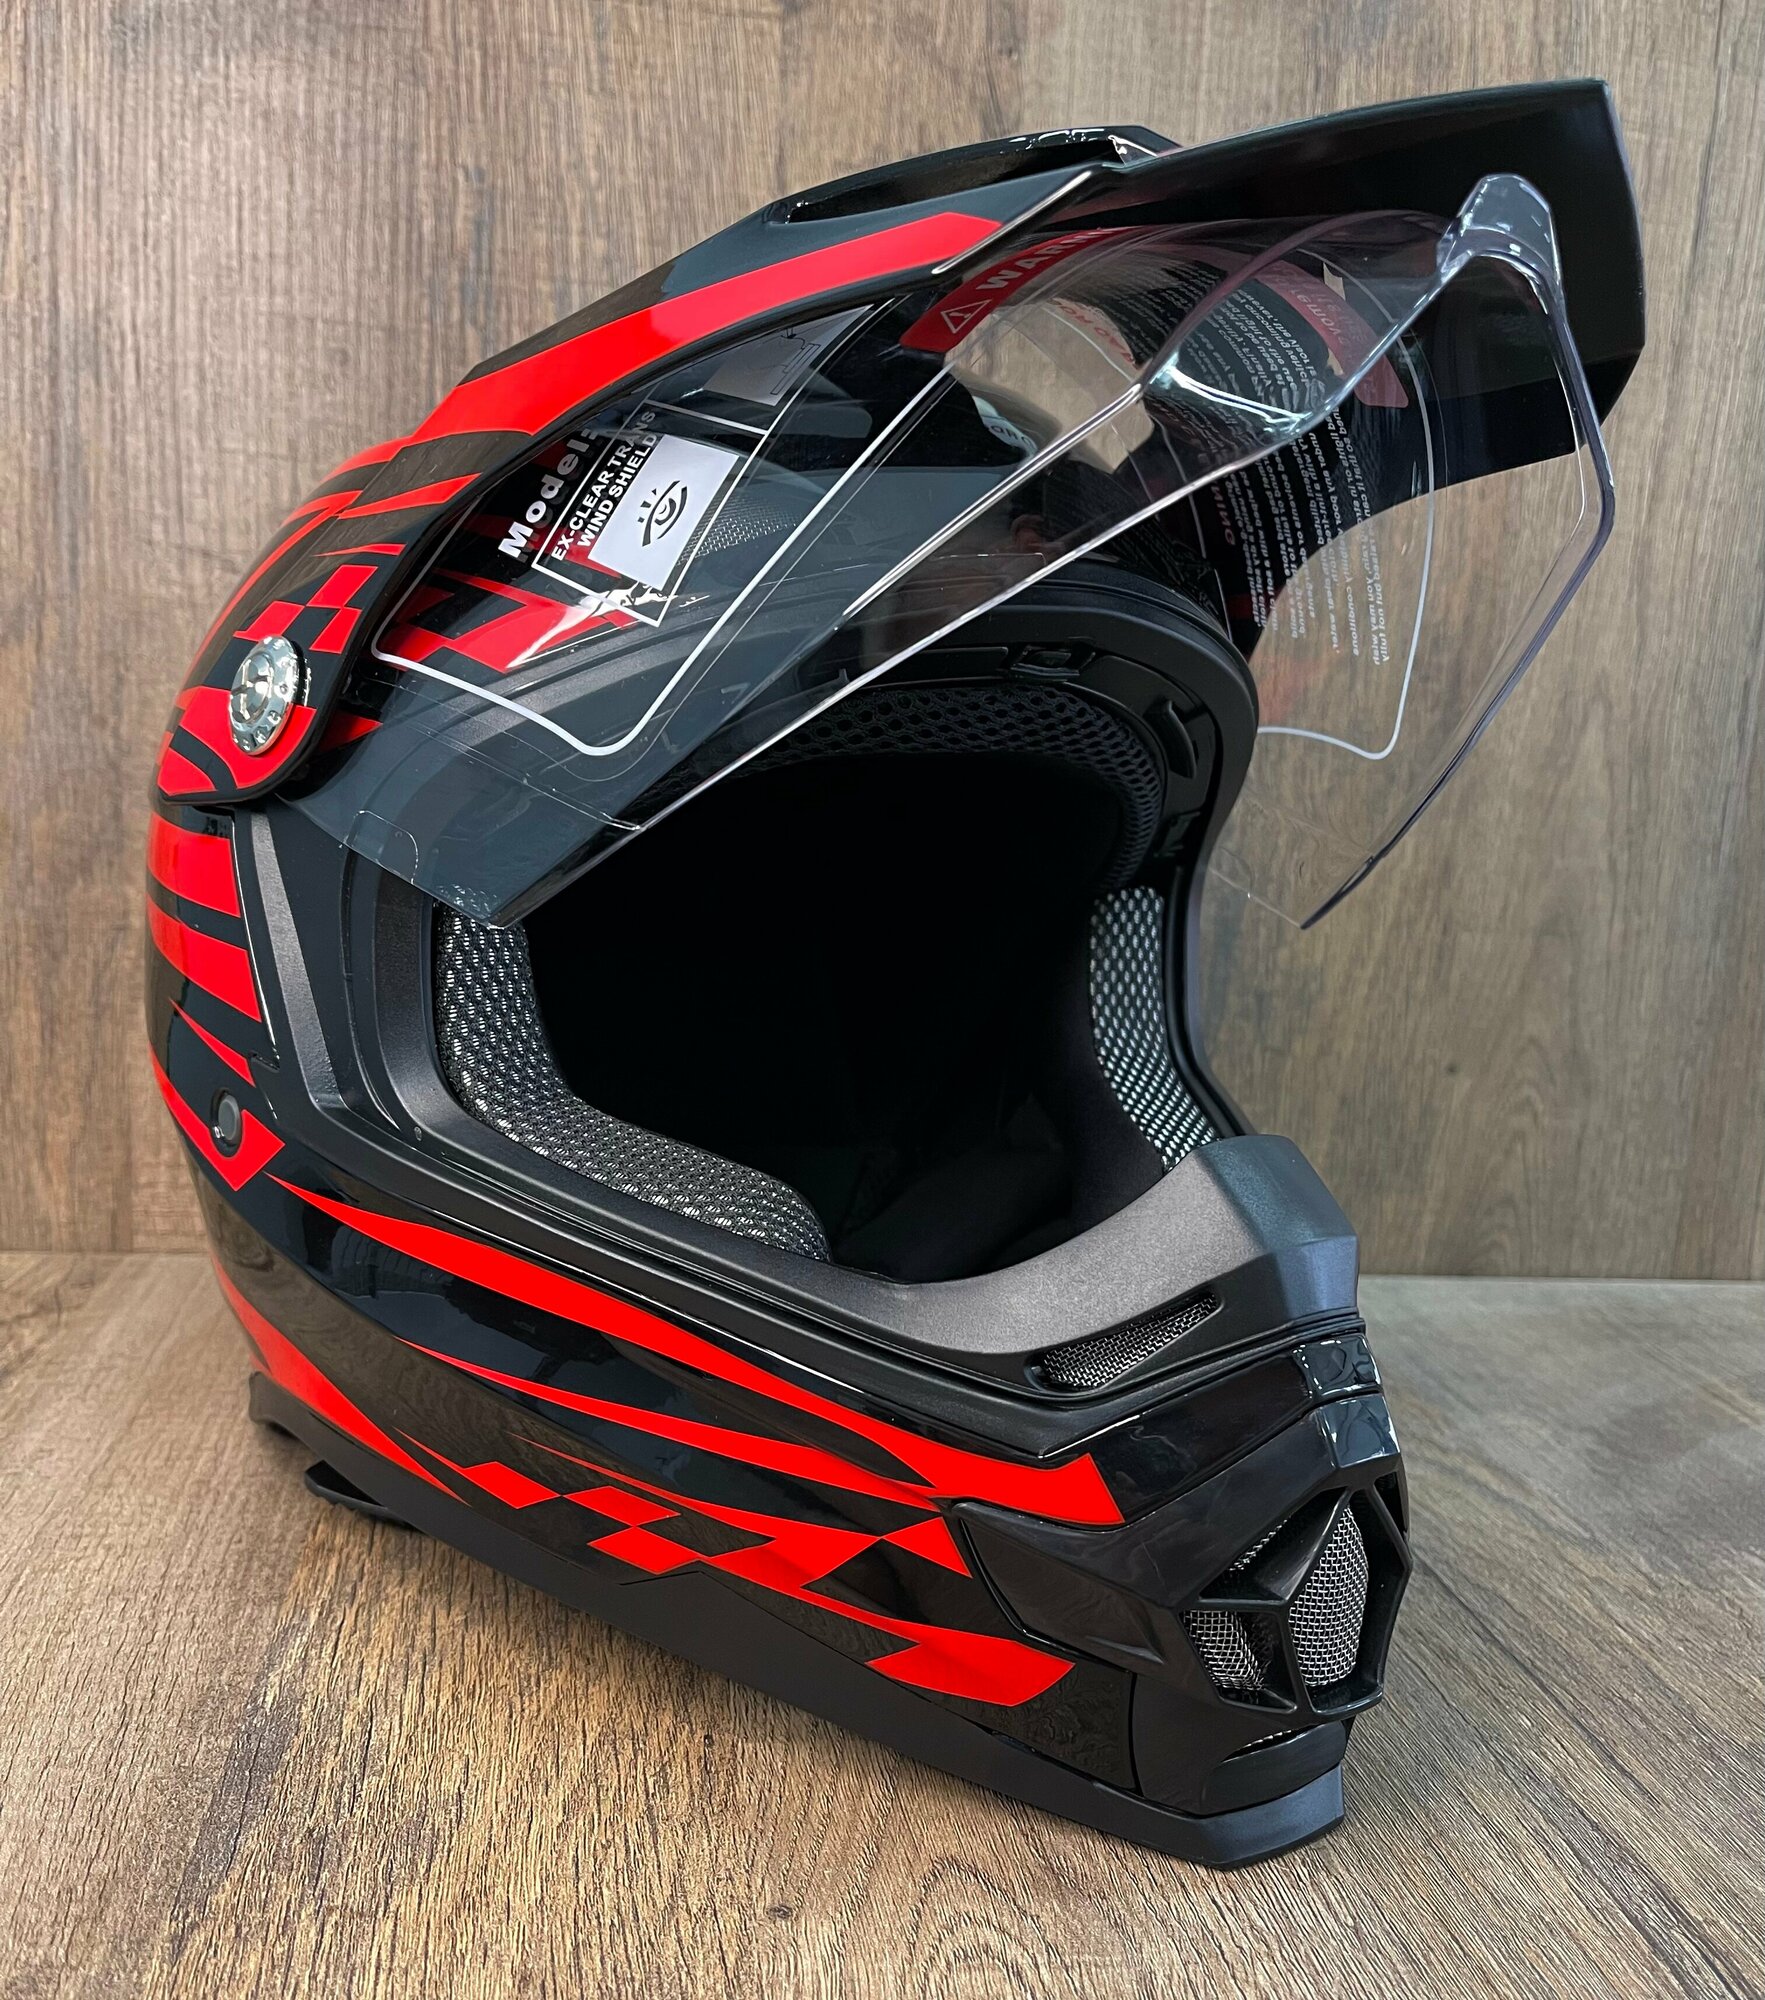 Мотошлем "BLD-819" - кроссовый шлем XS от бренда BLD красный